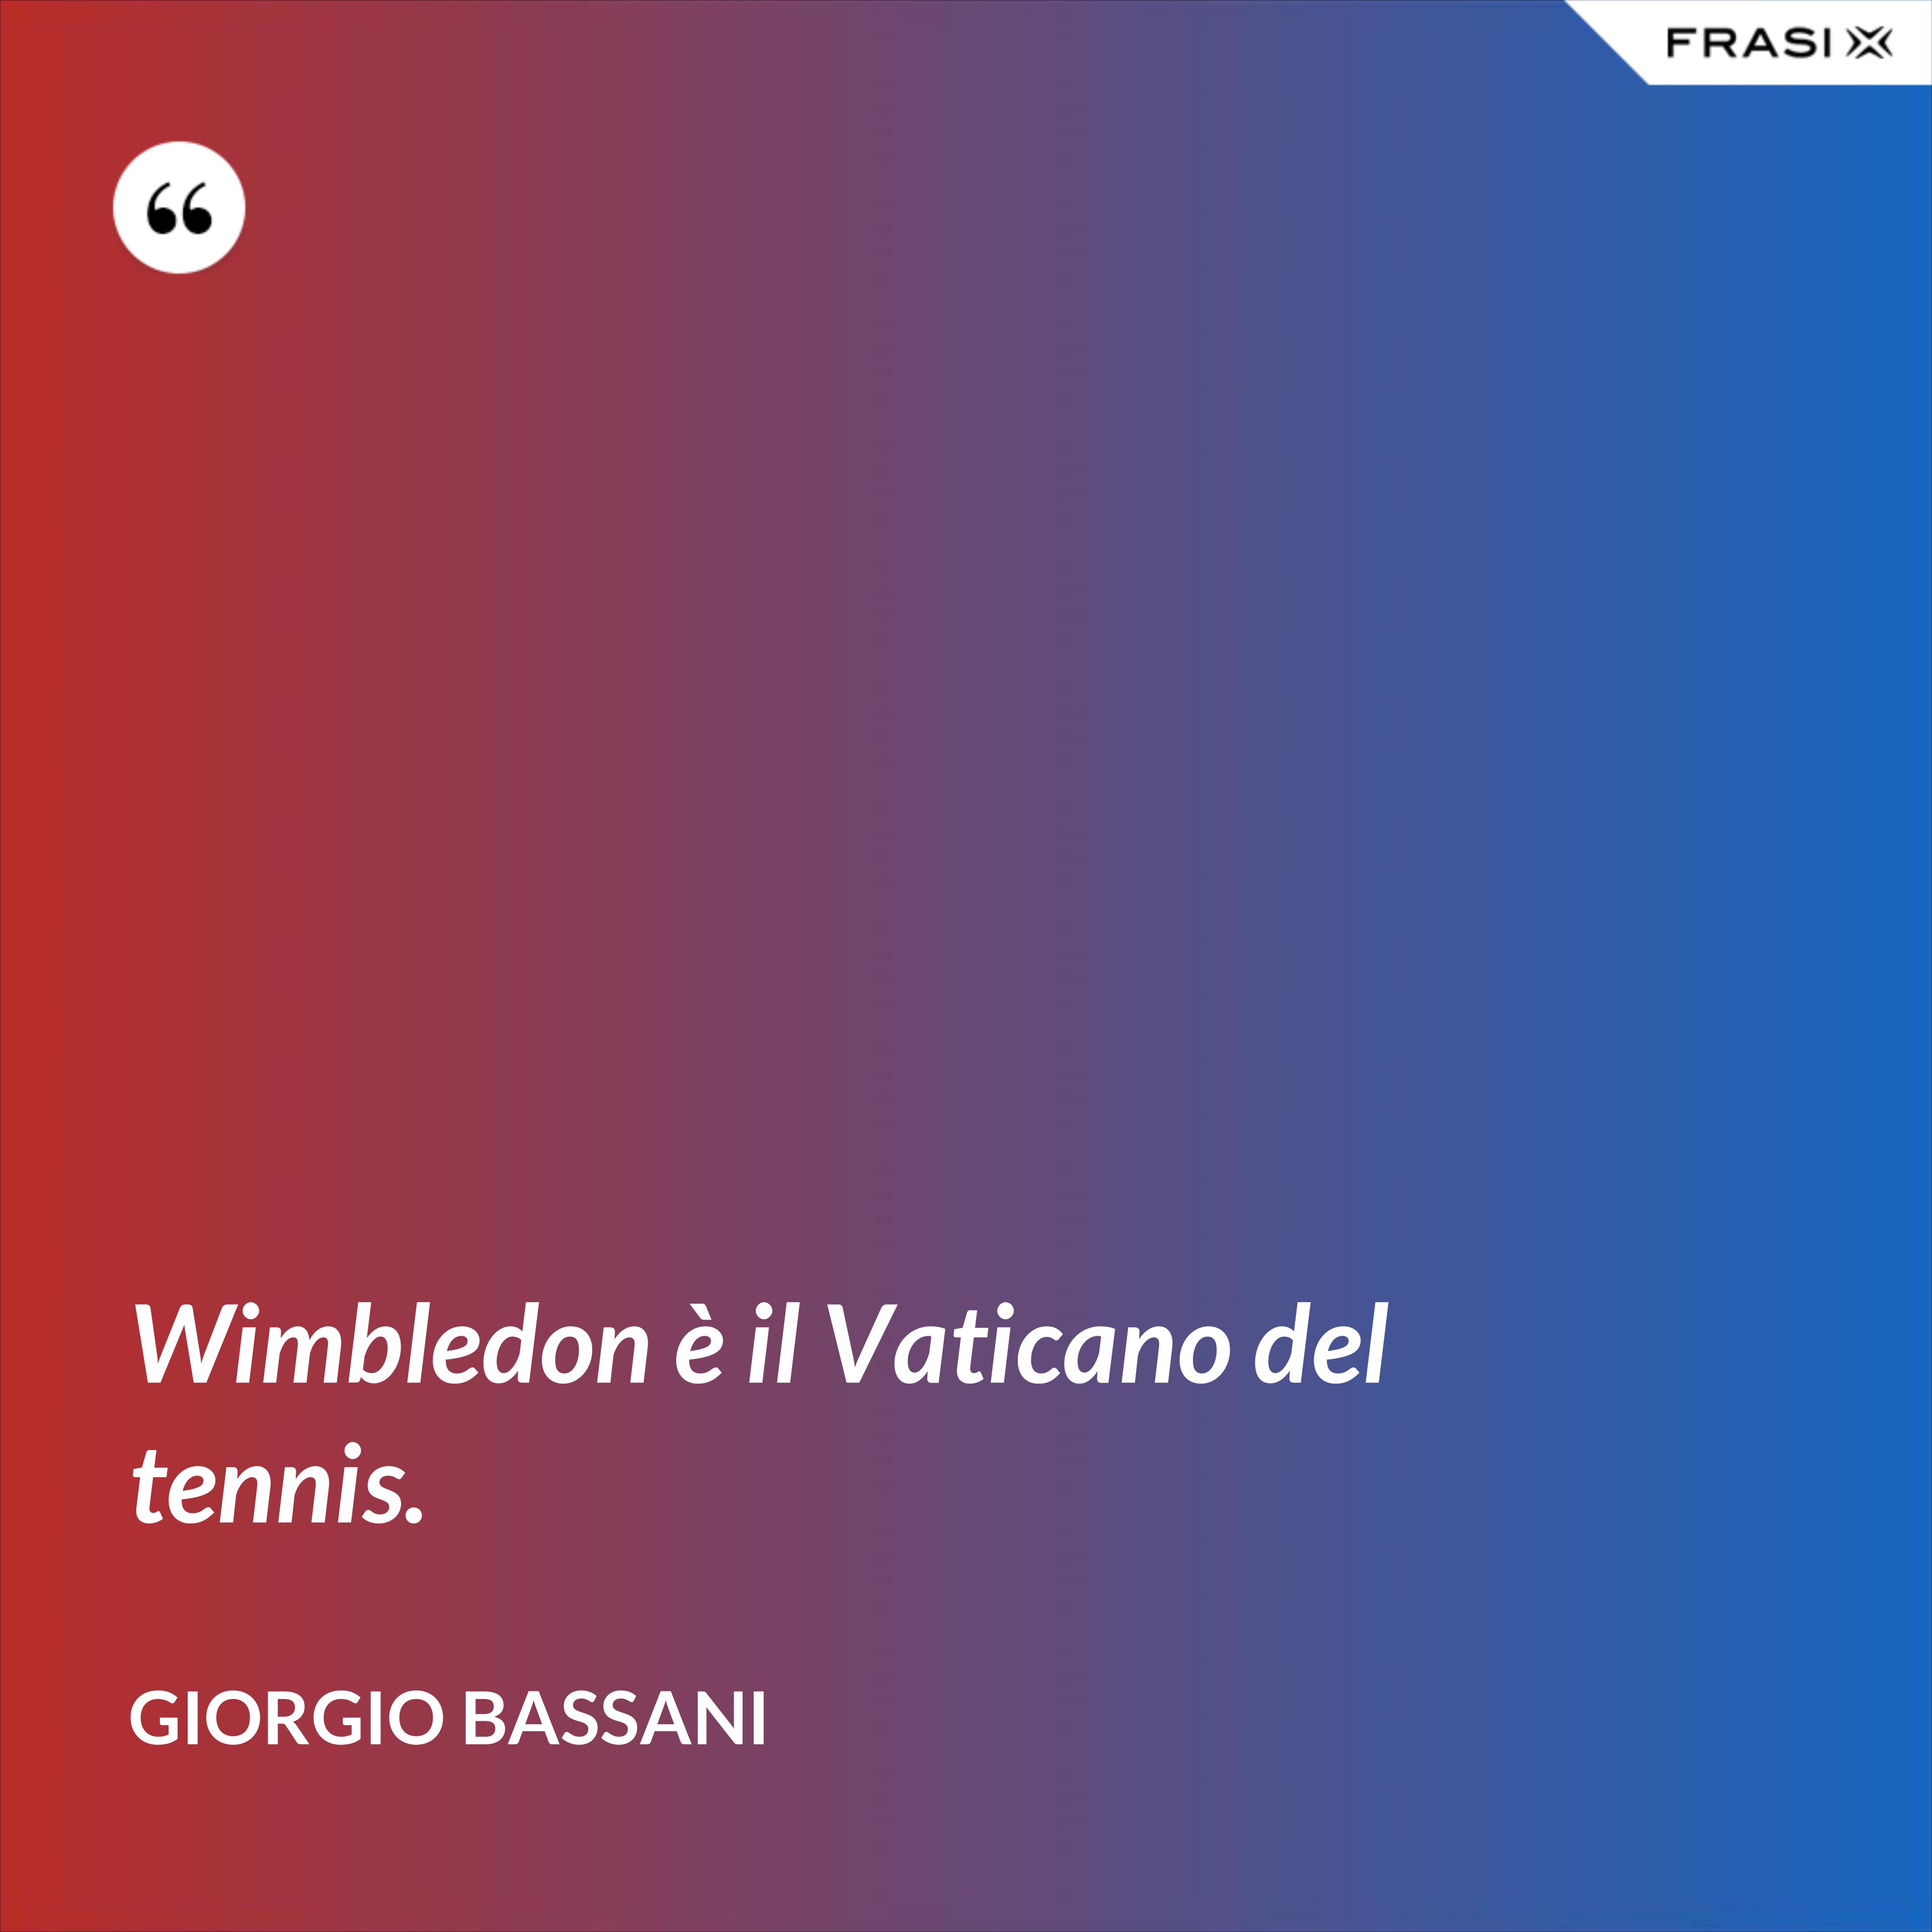 Wimbledon è il Vaticano del tennis. - Giorgio Bassani